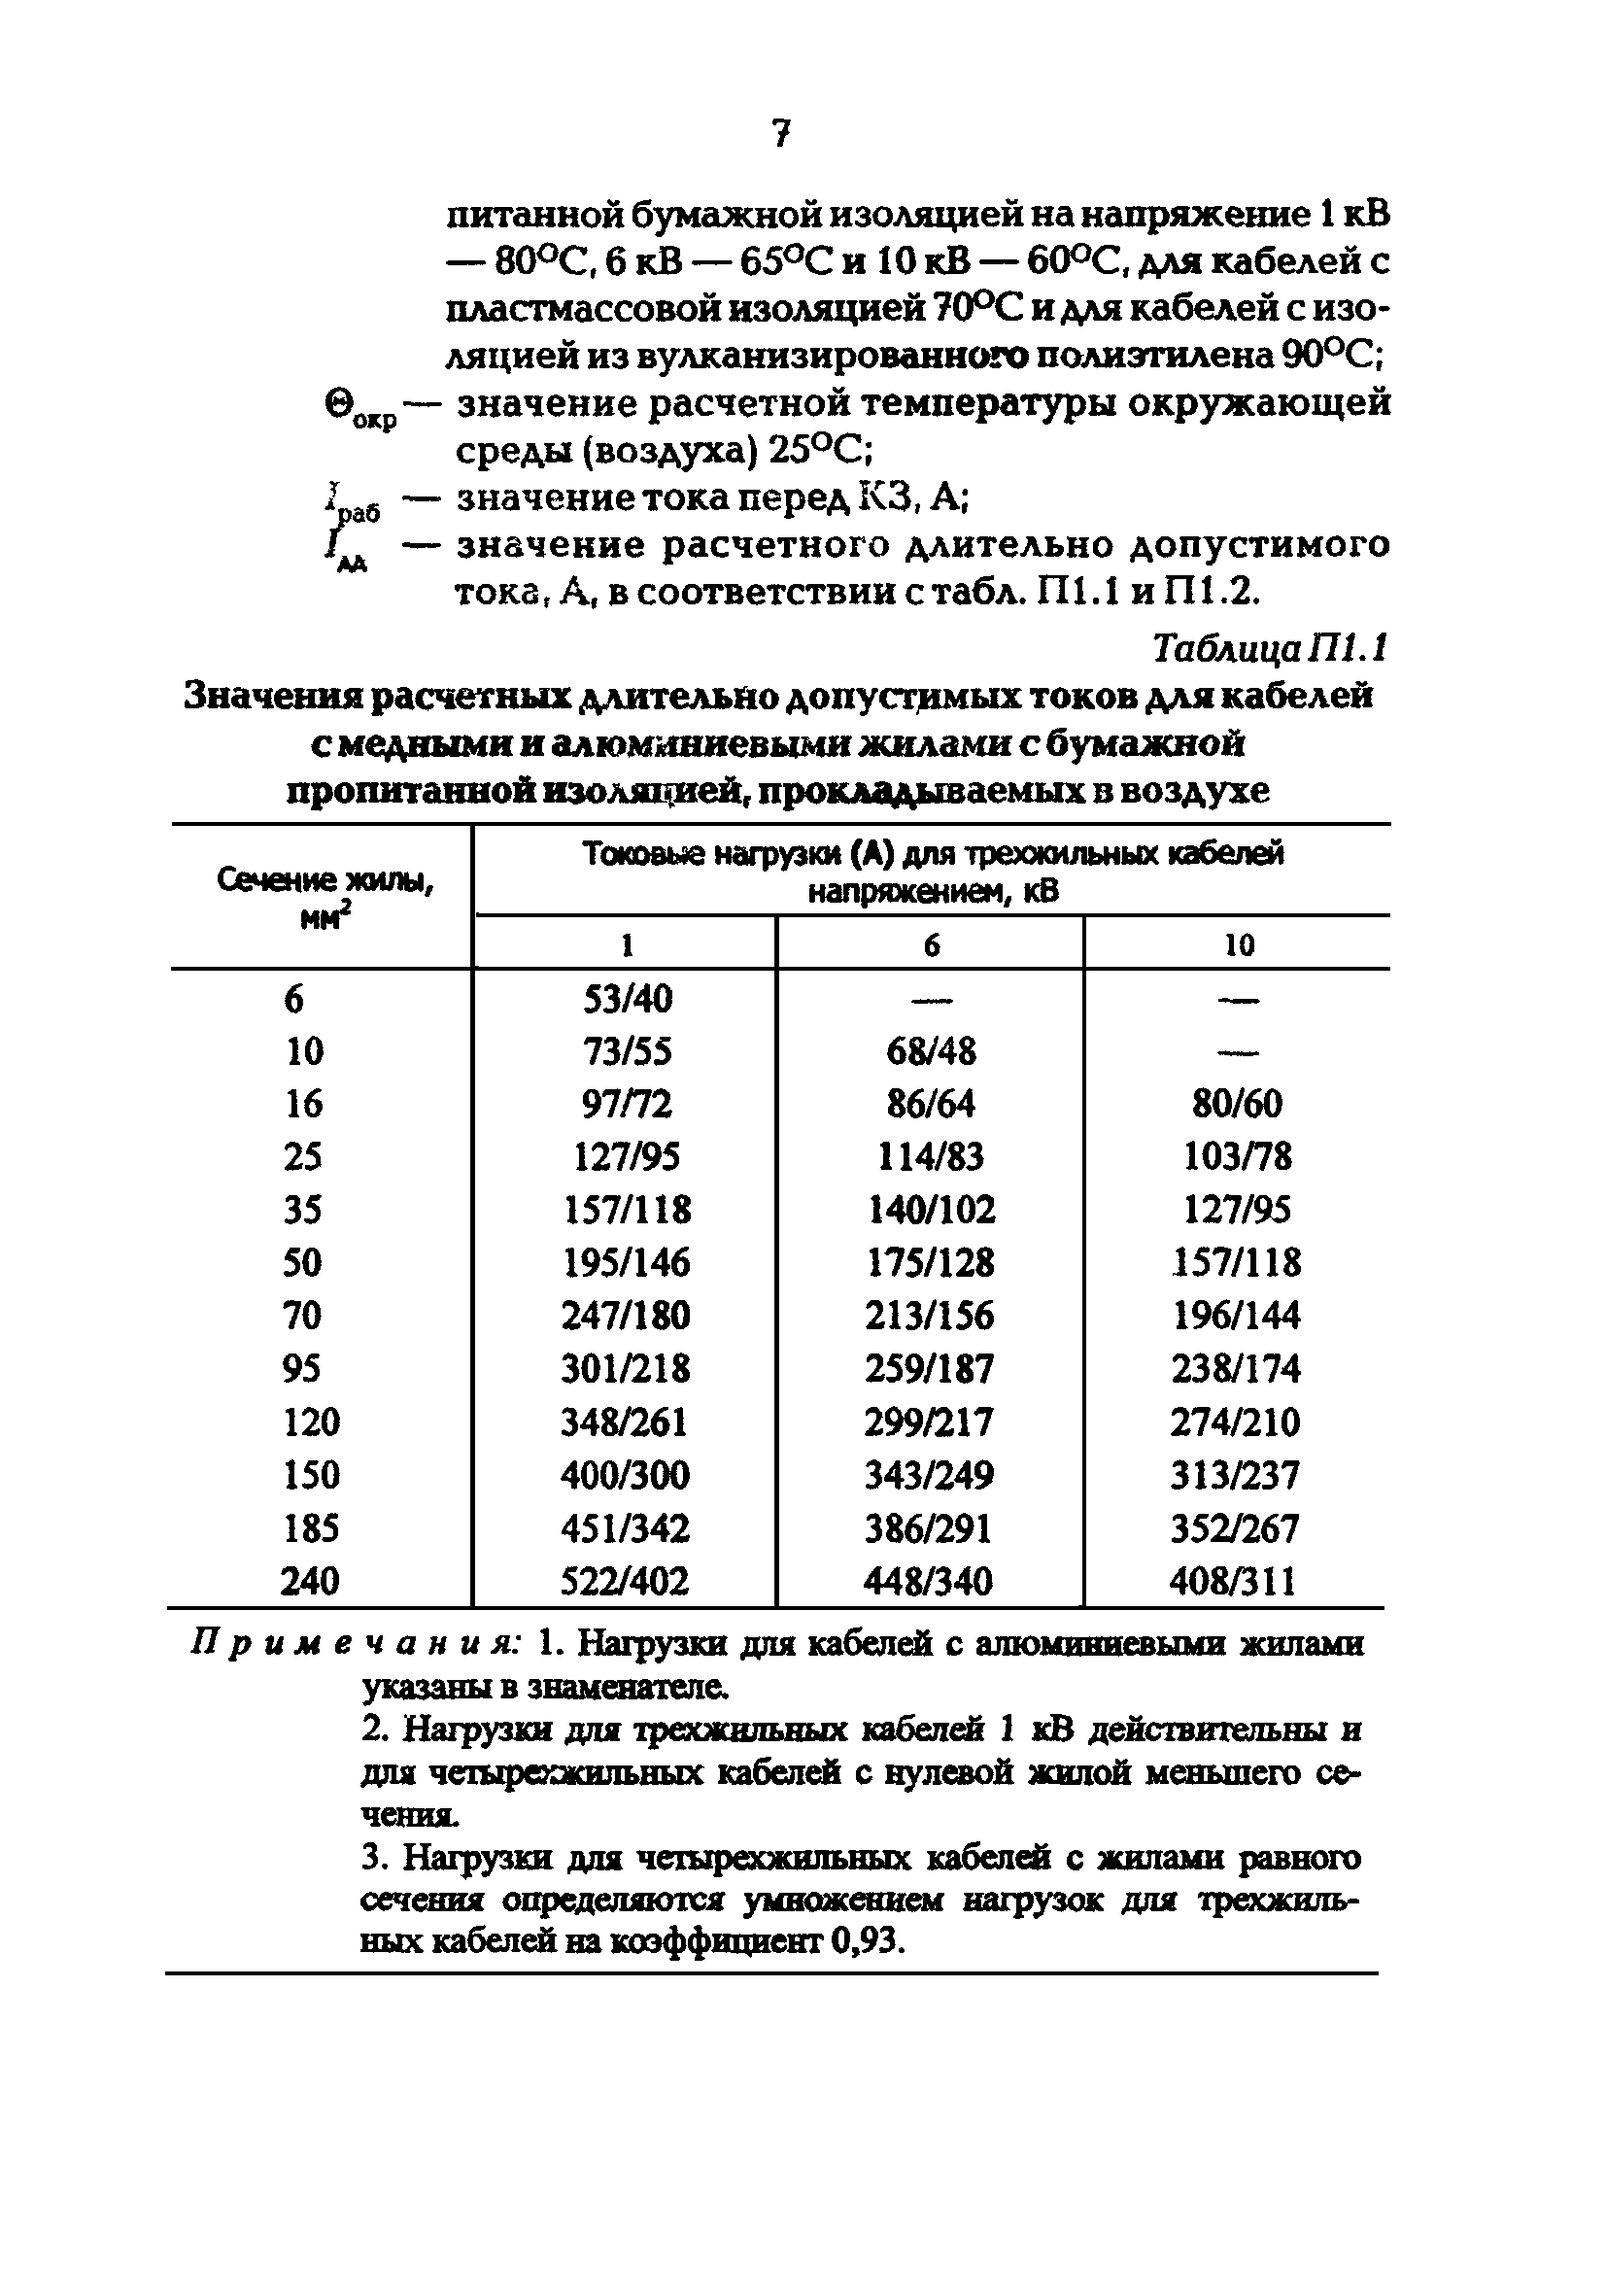 Циркуляр Ц-02-98(Э)